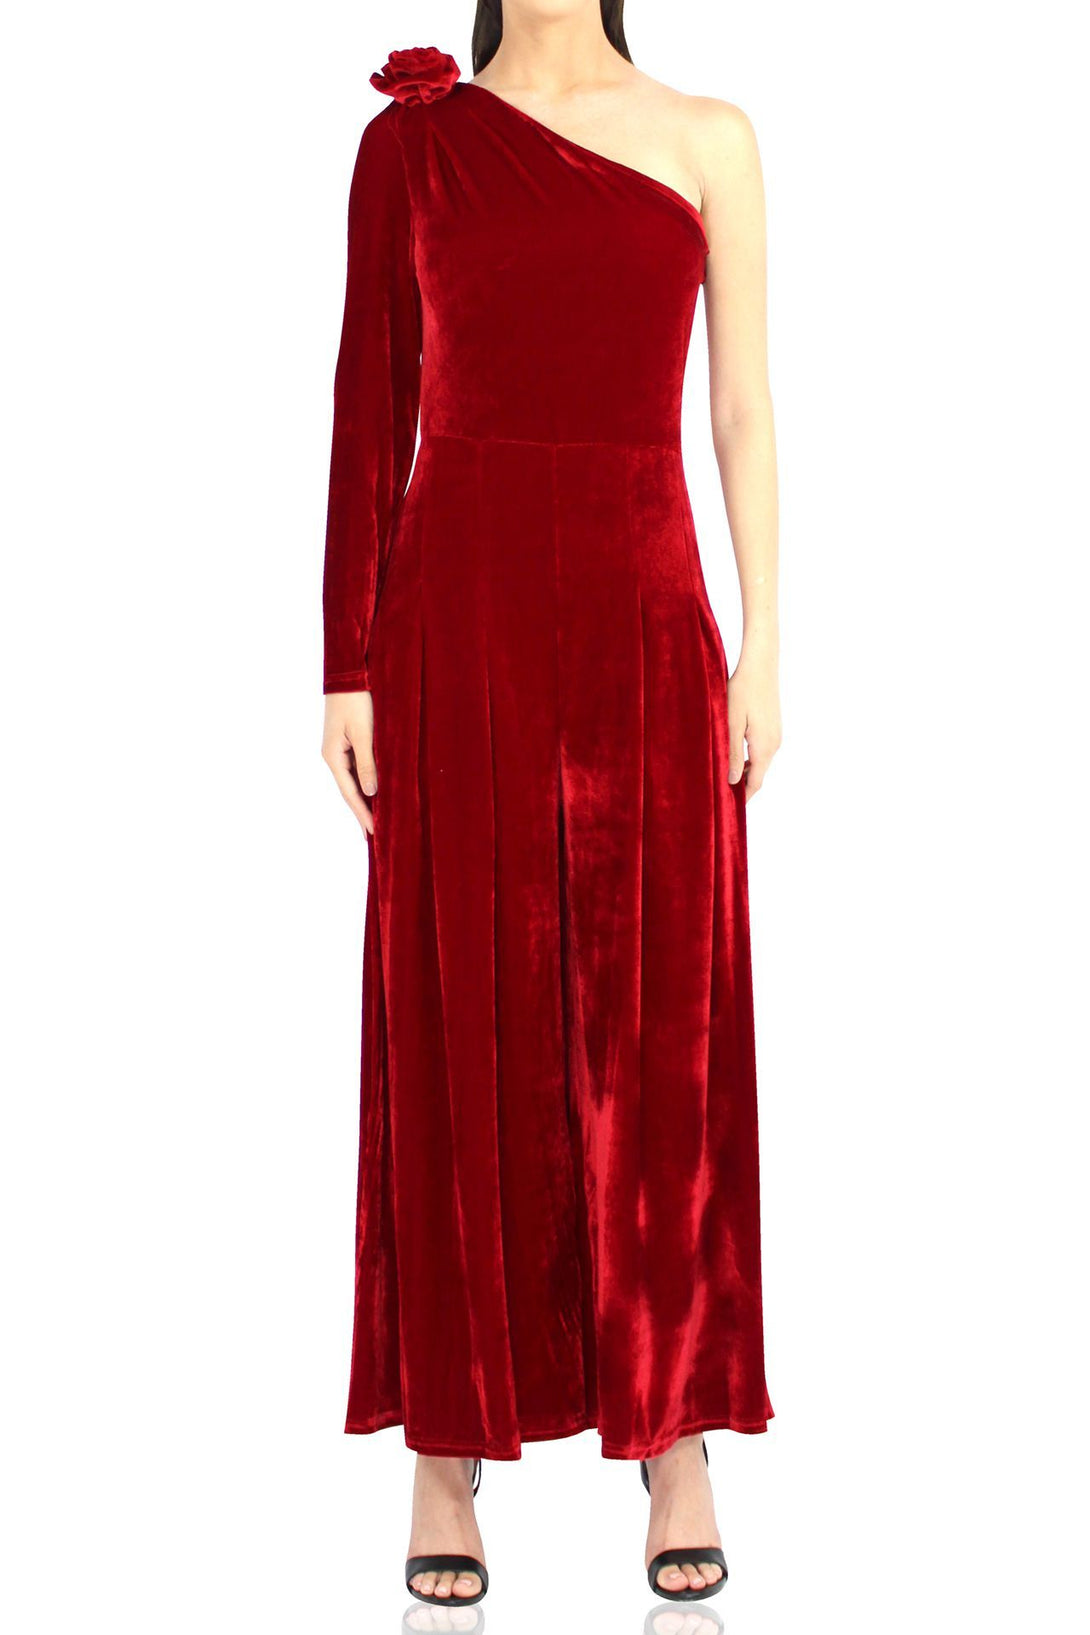 Women-Designer-One-Shoulder-Long-Dress-In-Red-By-Kyle-Richard